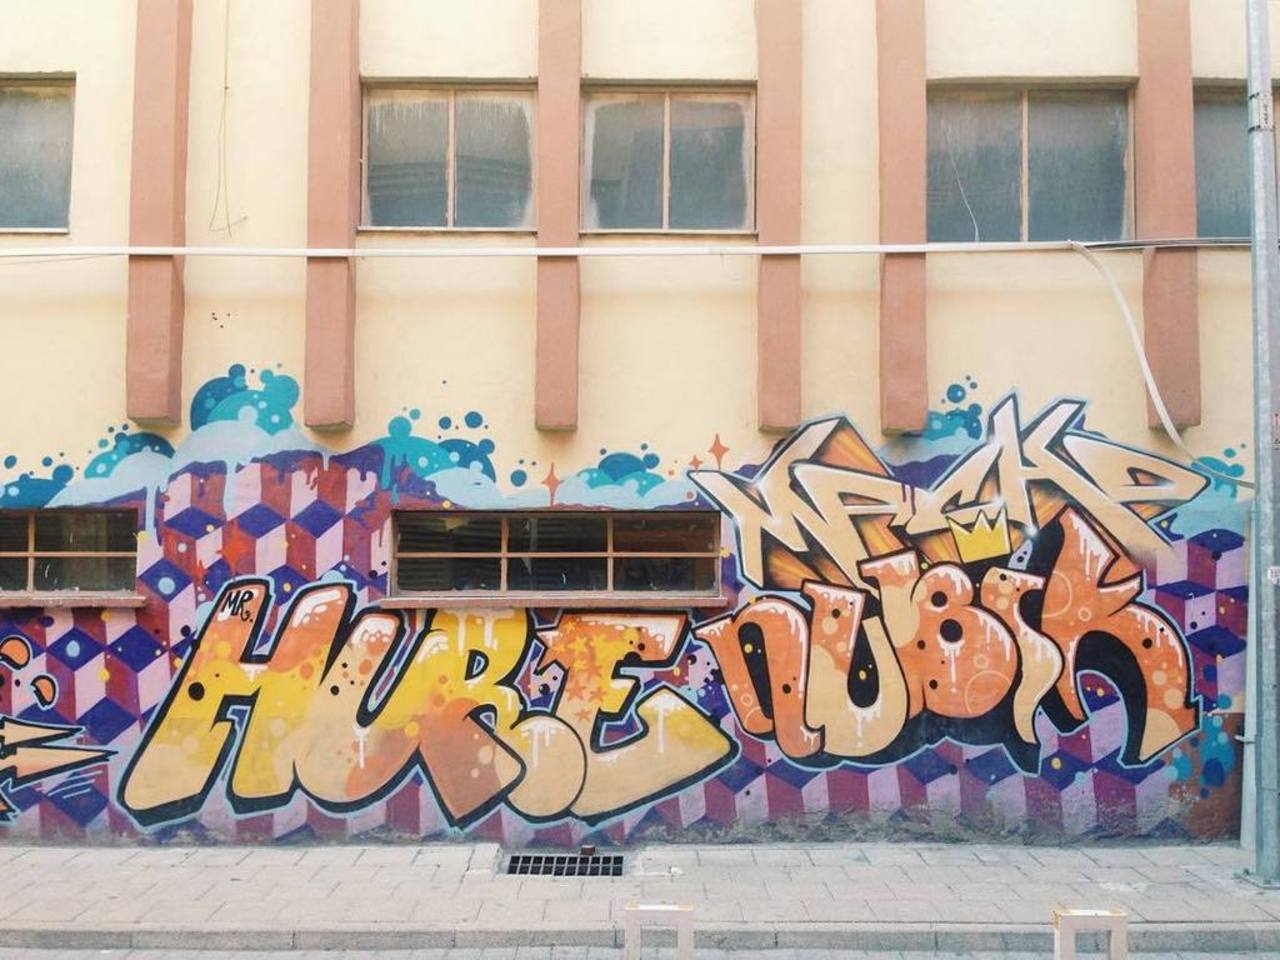 RT @artpushr: via #mrvsgg "http://ift.tt/1gZB4oG" #graffiti #streetart http://t.co/ozngvqEvY6